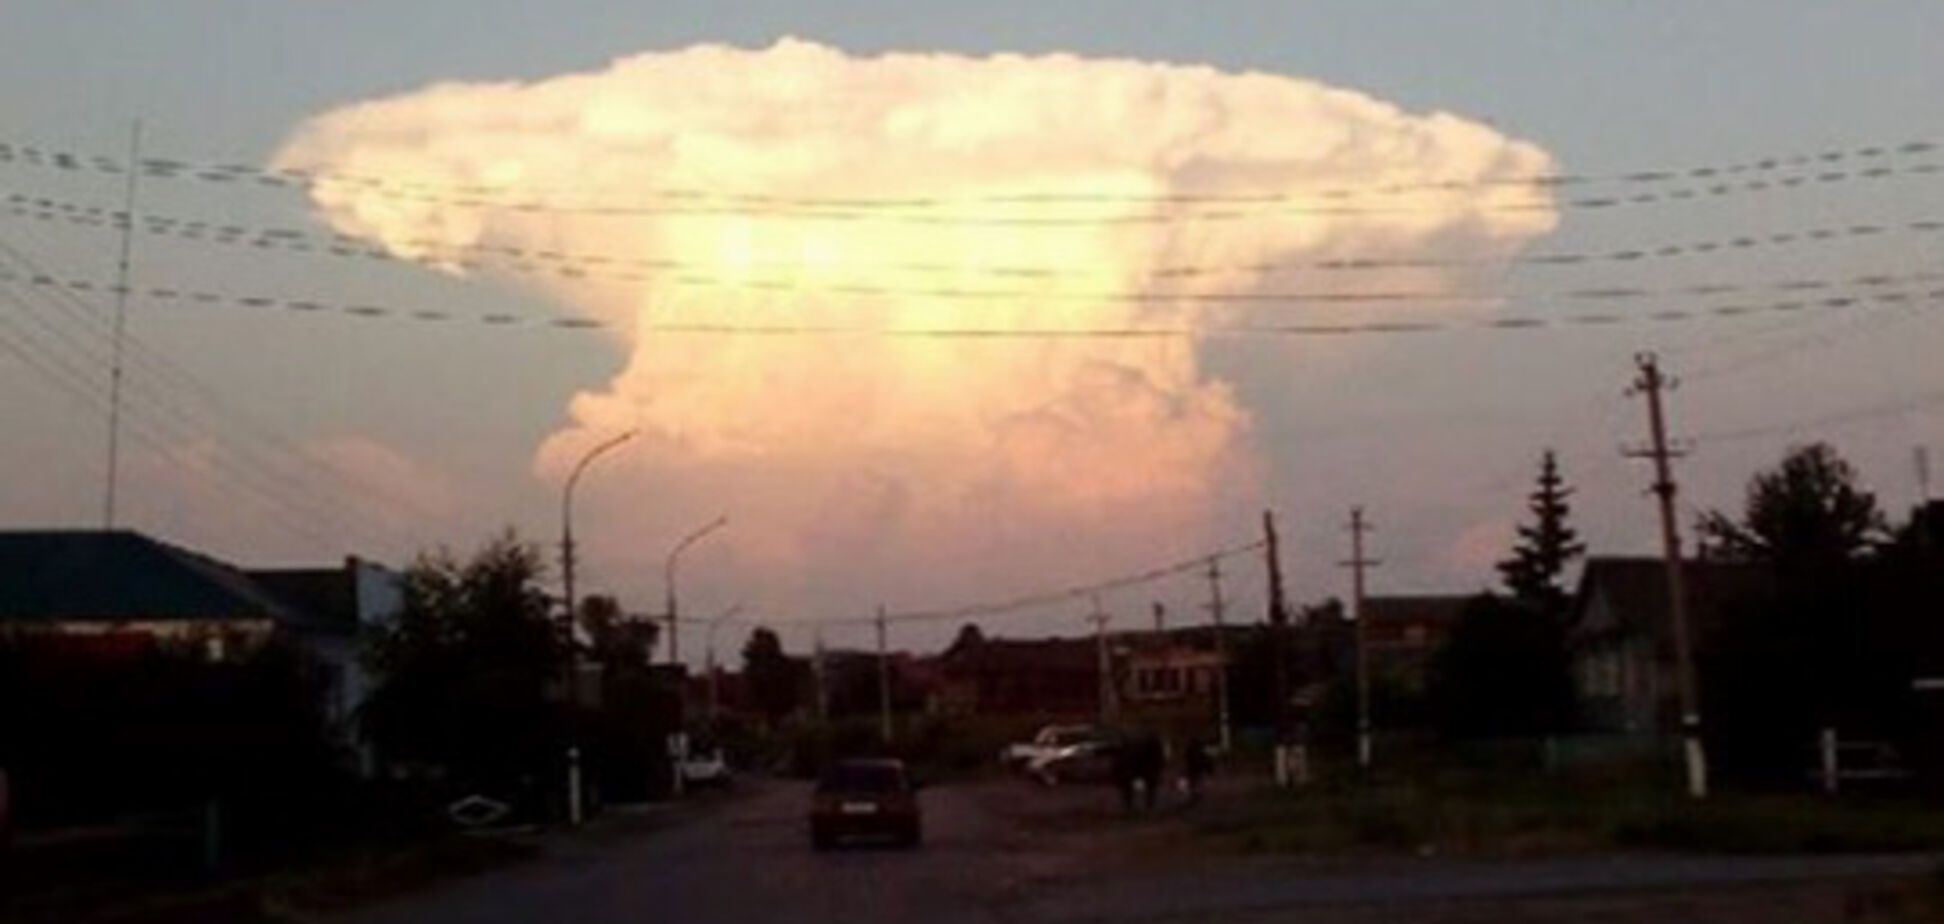 Третья мировая? 'Ядерный гриб' в небе напугал жителей России